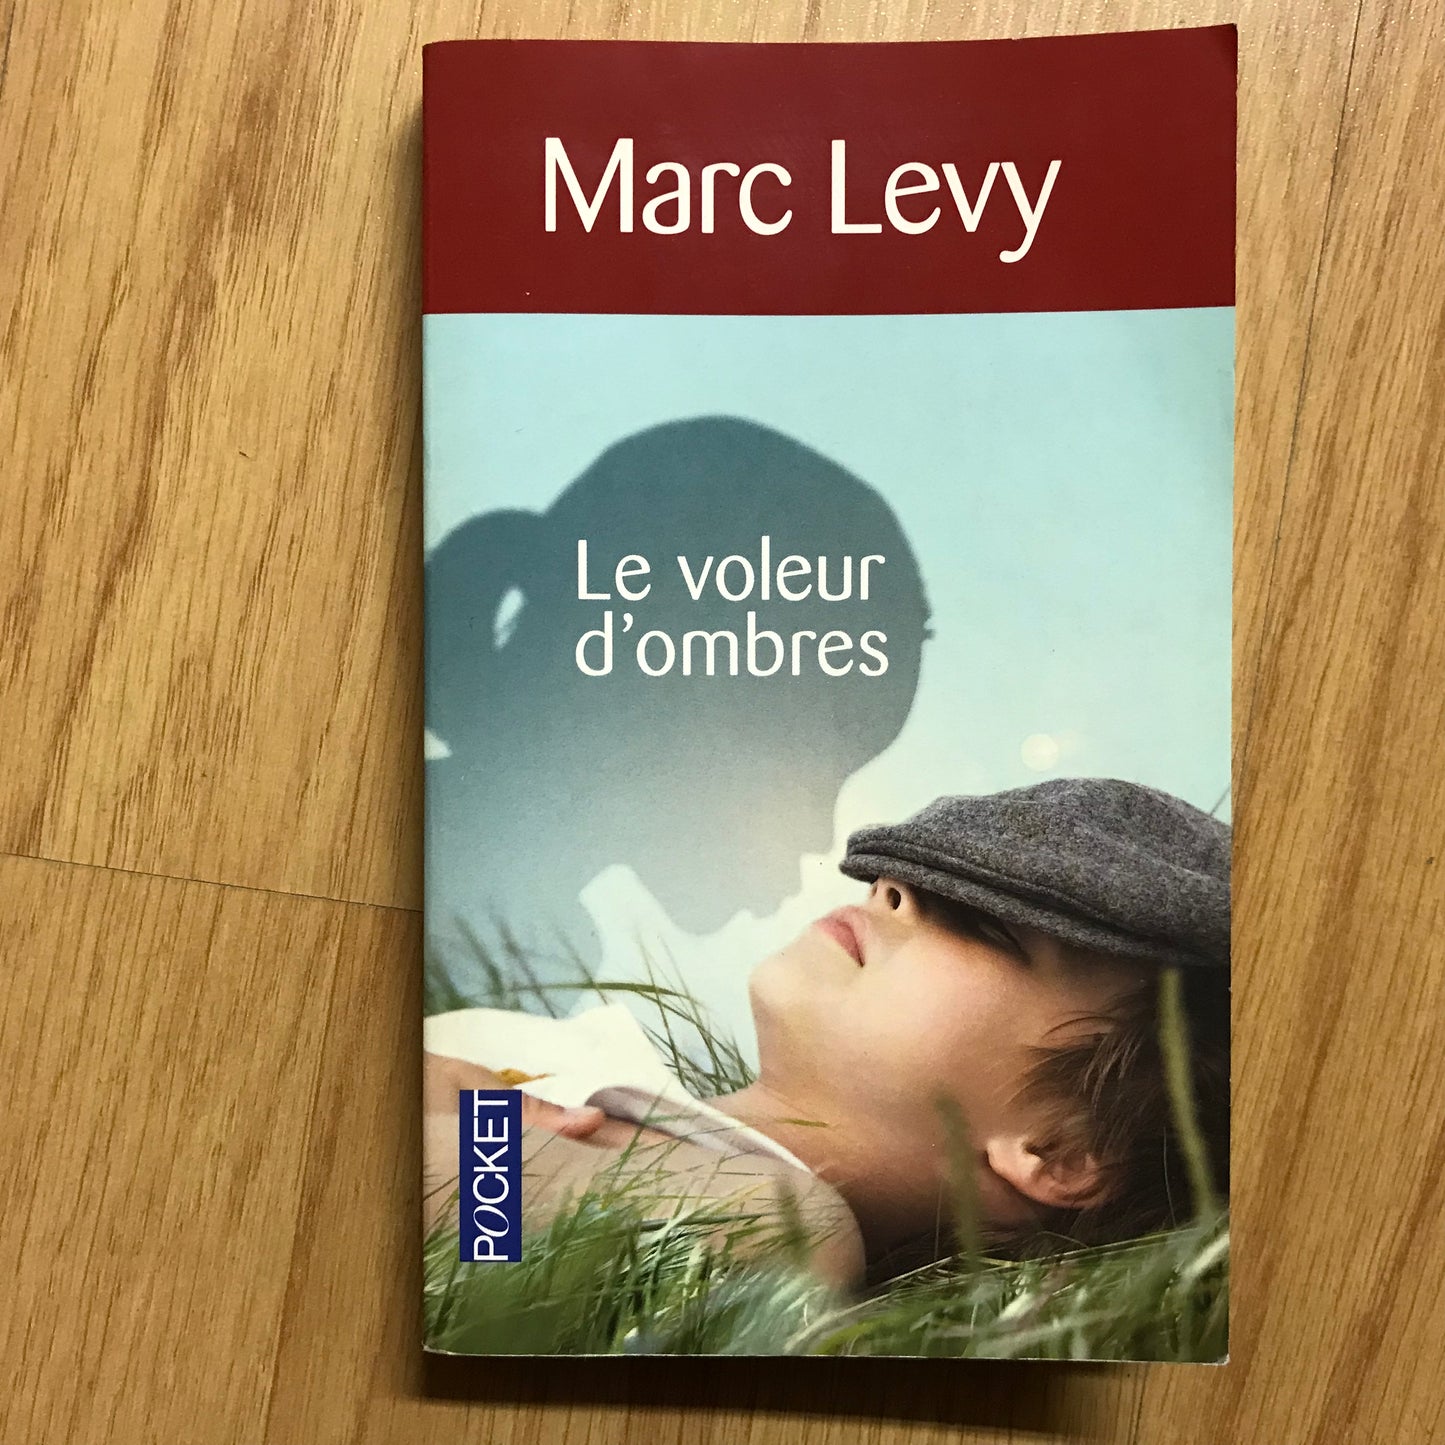 Levy, Marc - Le voleur d’ombres